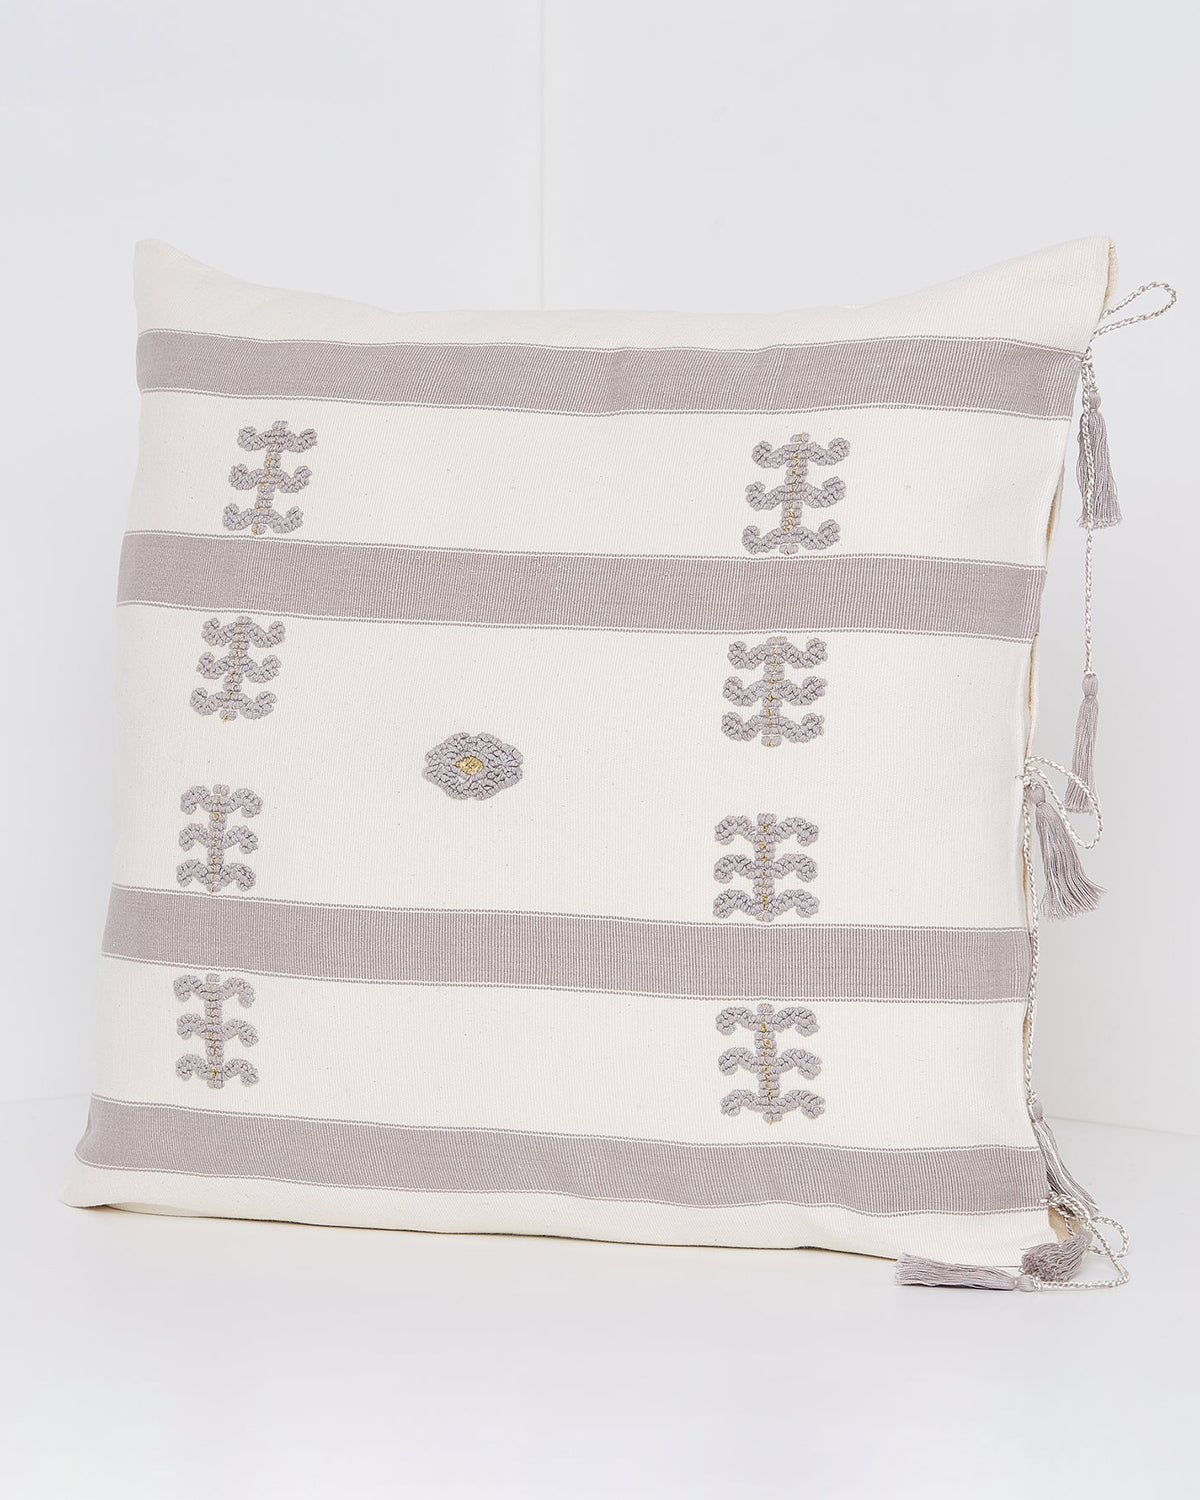 SALE 35% off - Virginia Cotton Throw Pillow White w/ Gray Embroidery